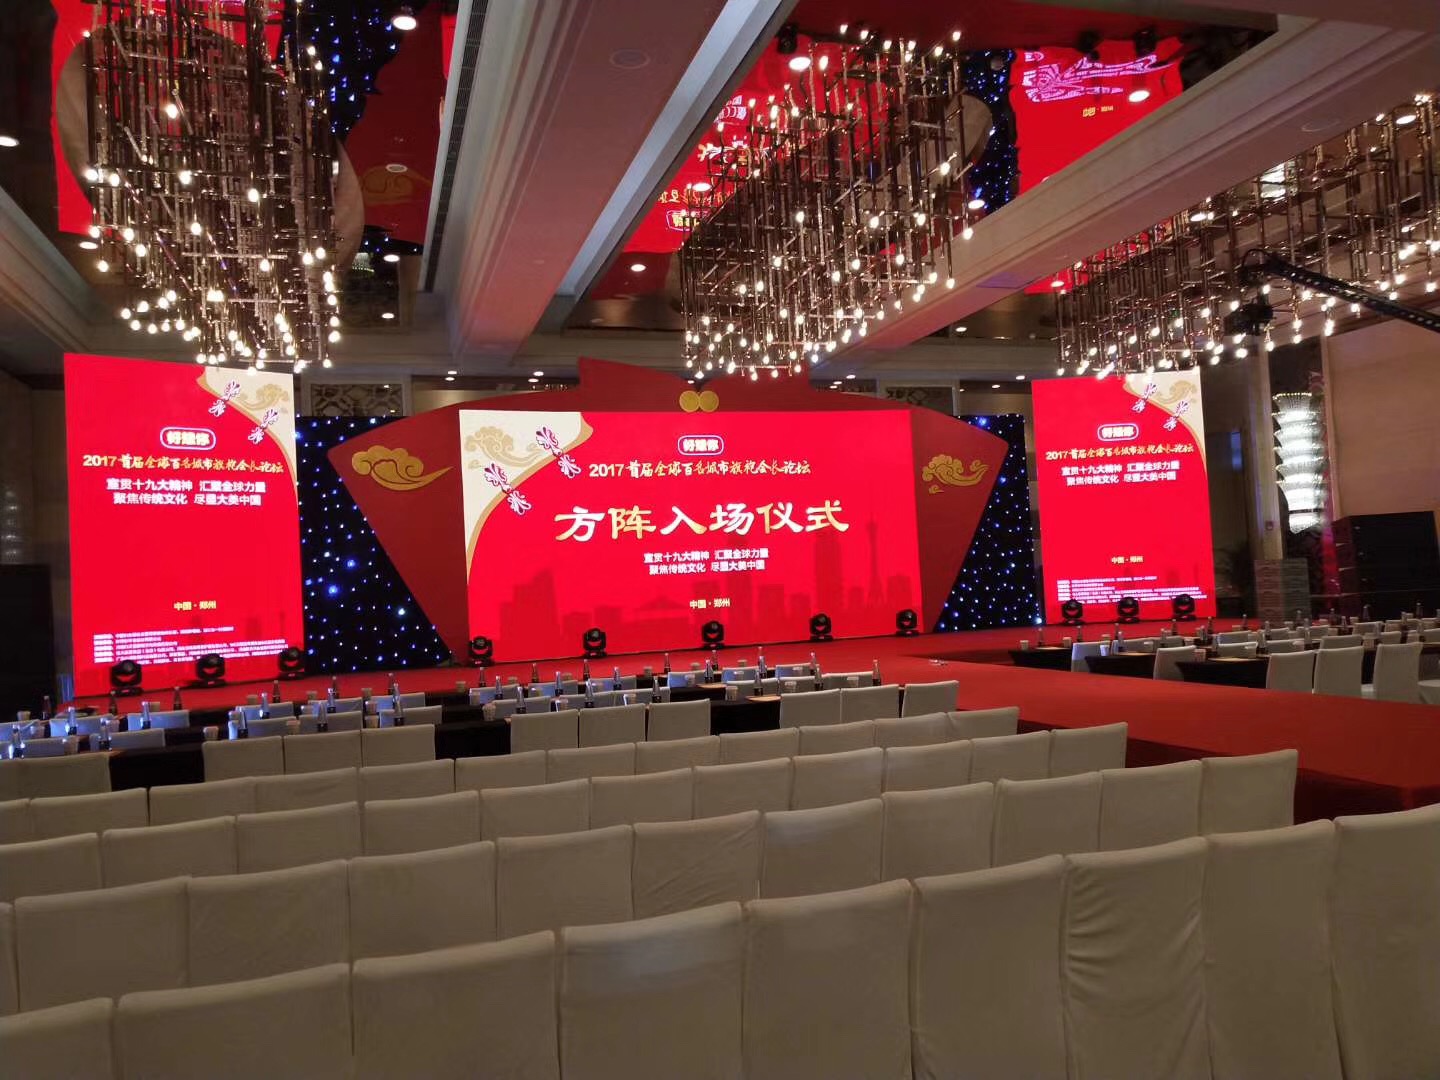 上海舞台桁架搭建 杨浦区新颖大屏安装公司 婚礼舞台灯光音响LED设备租赁